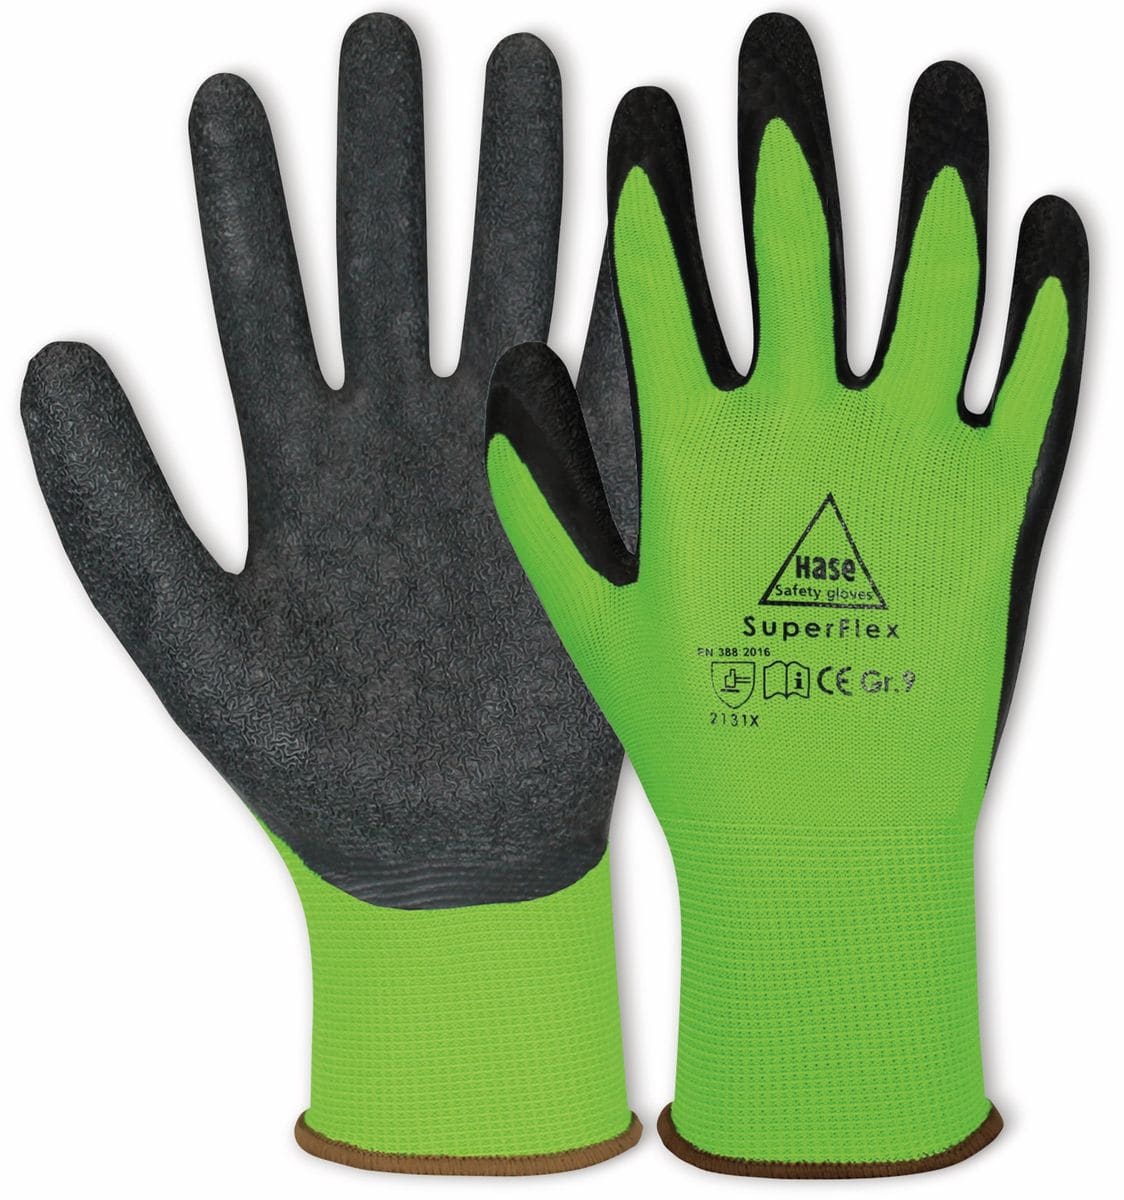 HASE SAFETY GLOVES Latex-Arbeitshandschuhe Superflex, EN 388, EN 420, Größe 6, grün/schwarz von Hase Safety gloves